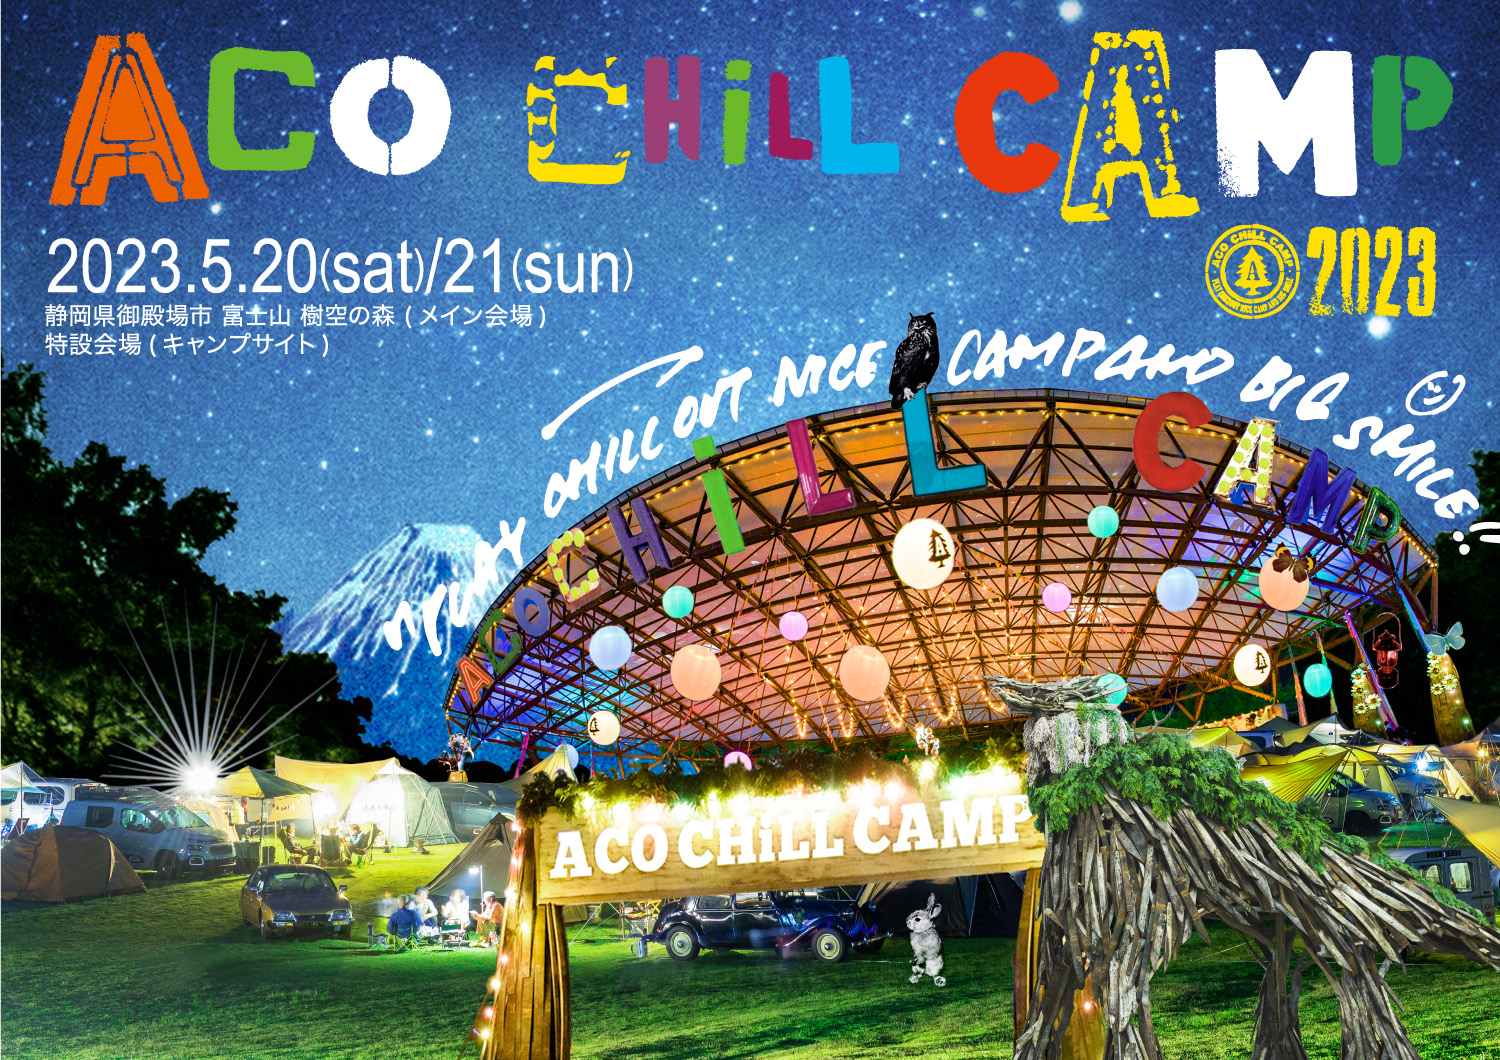 ACO CHiLL CAMP 2023